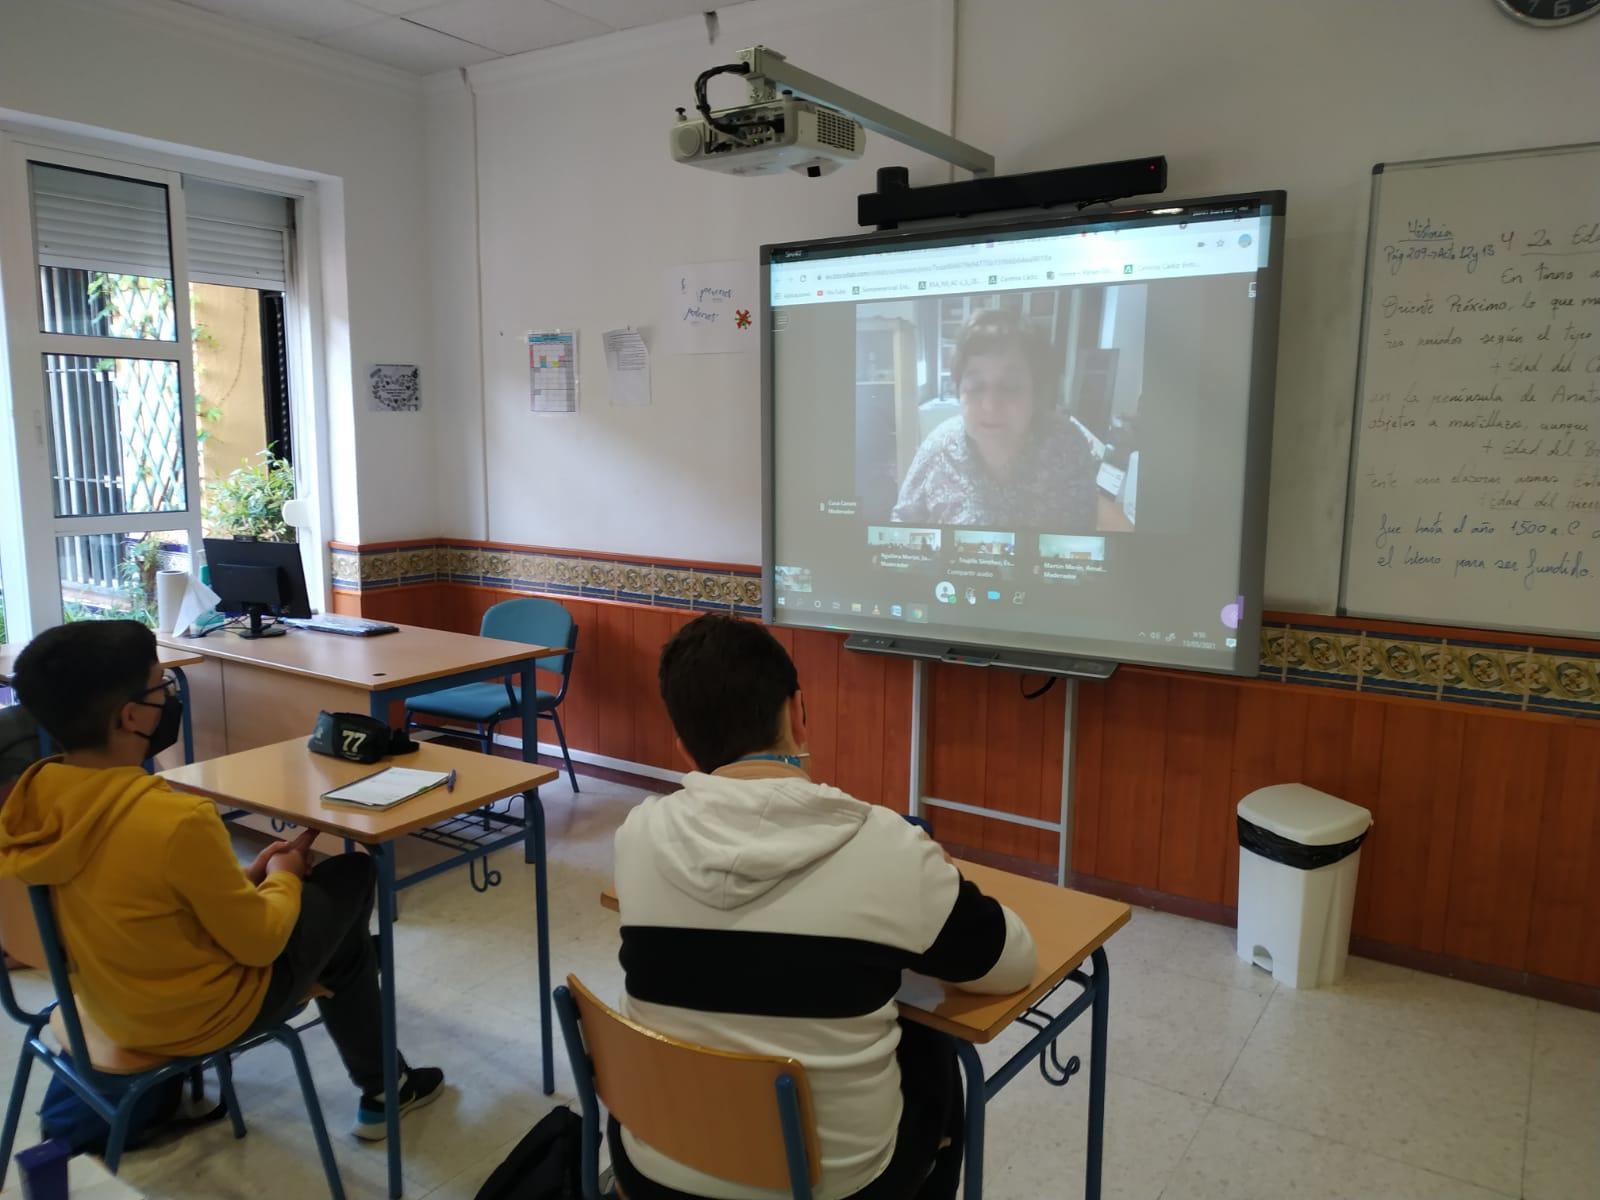 La escritora Cuca Canals mantuvo un fructífero encuentro con los alumnos de 1º de ESO del IES Los Remedios